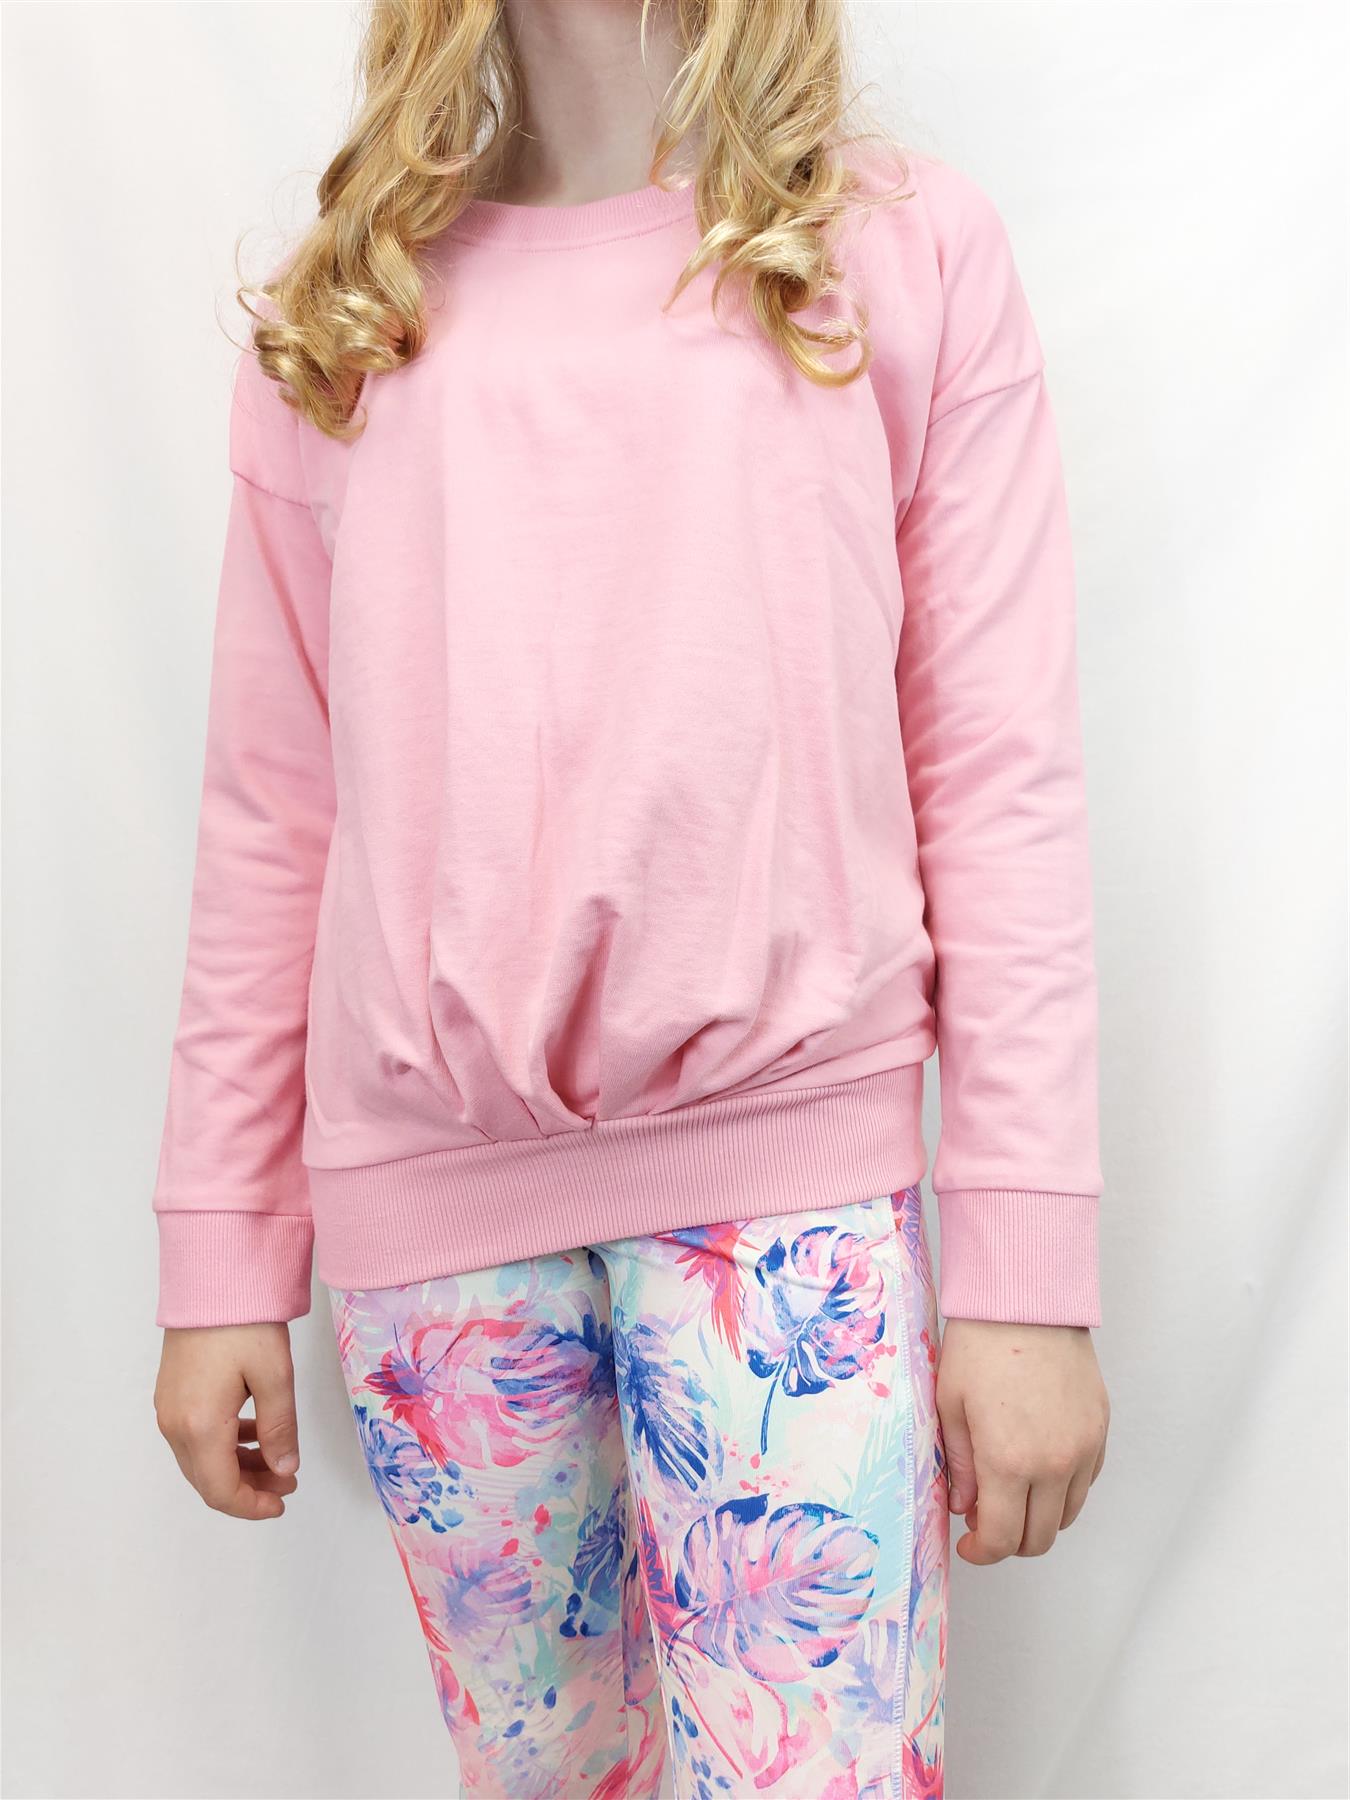 Ex Chainstore Girls' Sweatshirt Jumper Pullover Cotton Rich Brand New